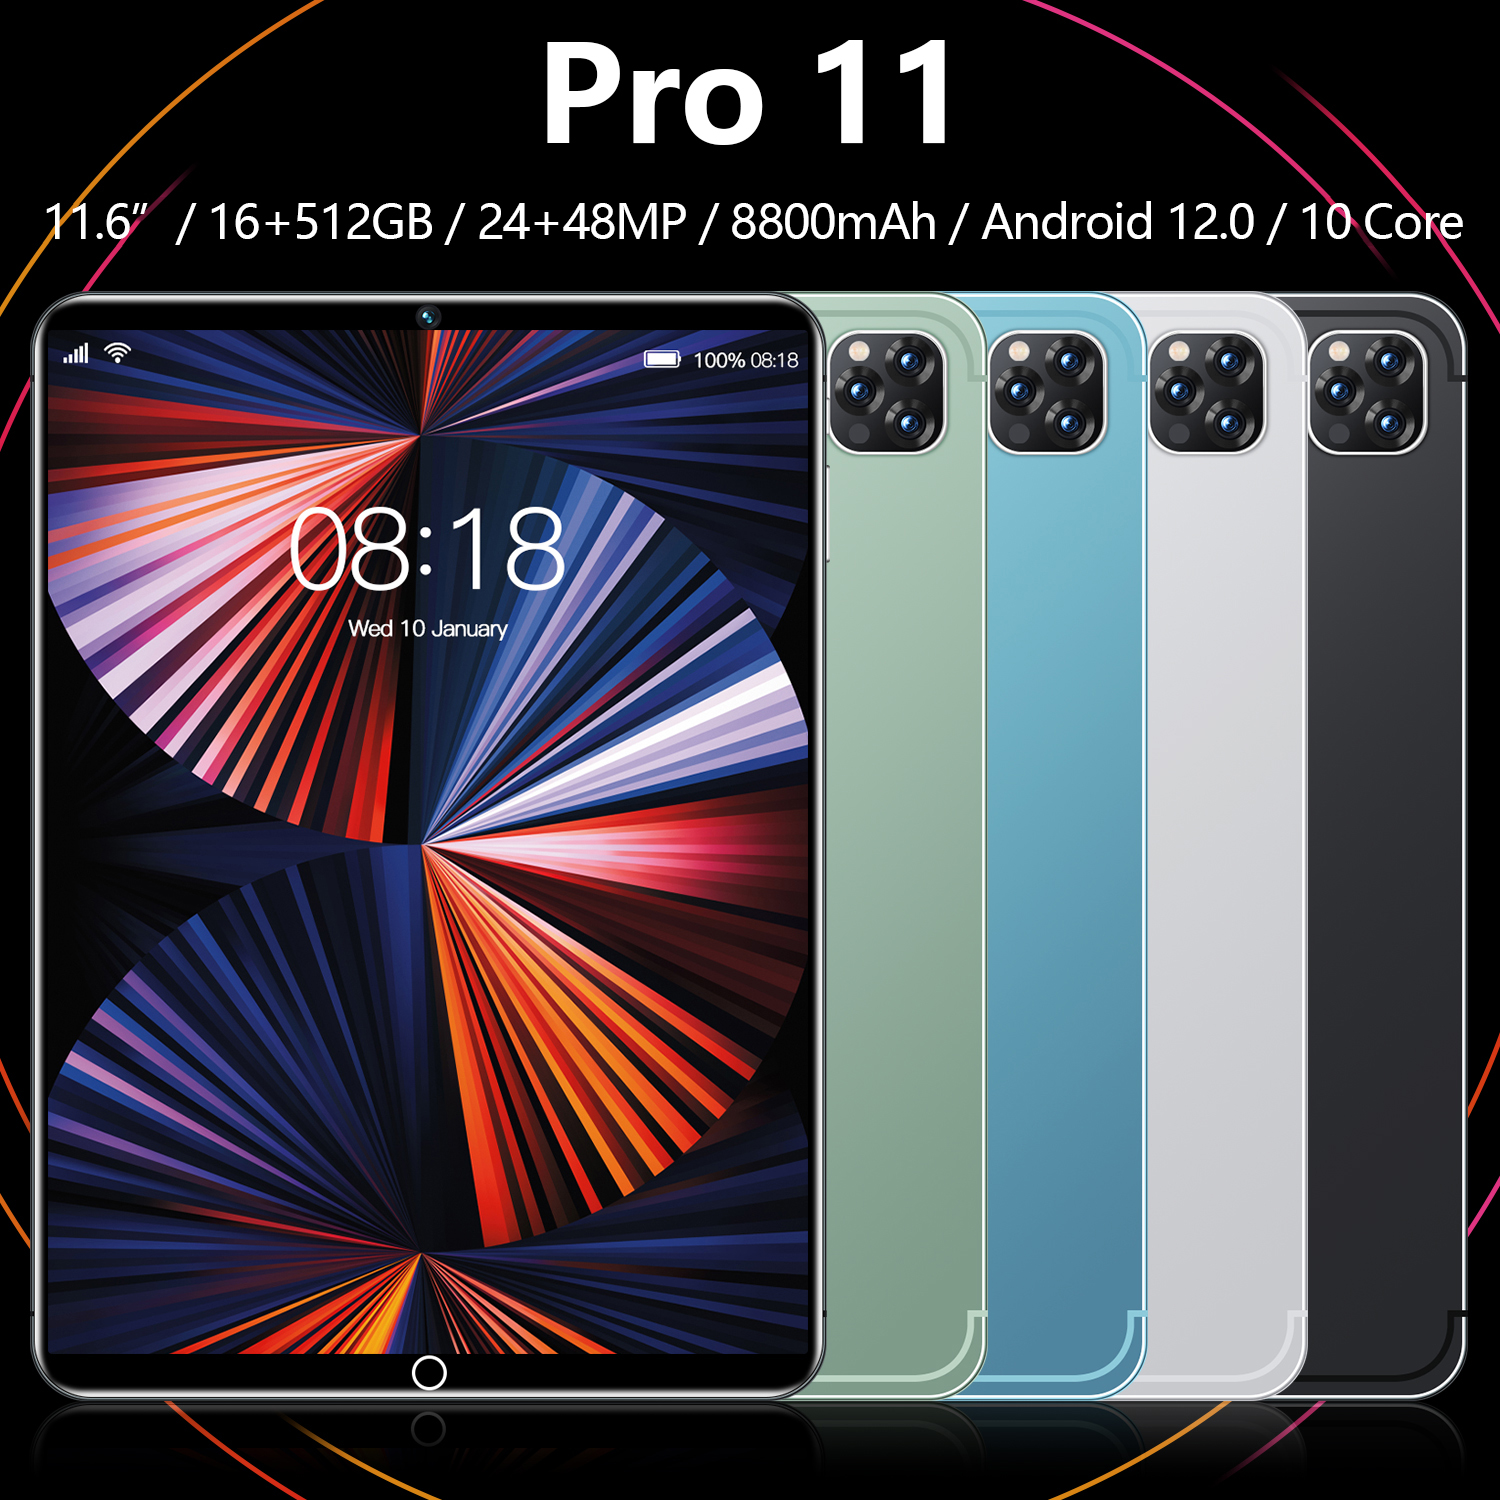 ภาพประกอบของ 【รับประกัน 1 ปี】Sansumg Tab Pro11 11.6 inch RAM16G+ROM512G โทรได้ Full HD แท็บเล็ตถูกๆ Andorid 12.0 จัดส่งฟรี รองรับภาษาไทย หน่วยประมวลผล 10-core แท็บเล็ตโทรได้ 4g/5Gแท็บเล็ตของแท้ ไอแพด ราคา ถูกๆ รับประกันอย่างเป็นทางการ 1 ปี แทบเล็ตของแท้2022